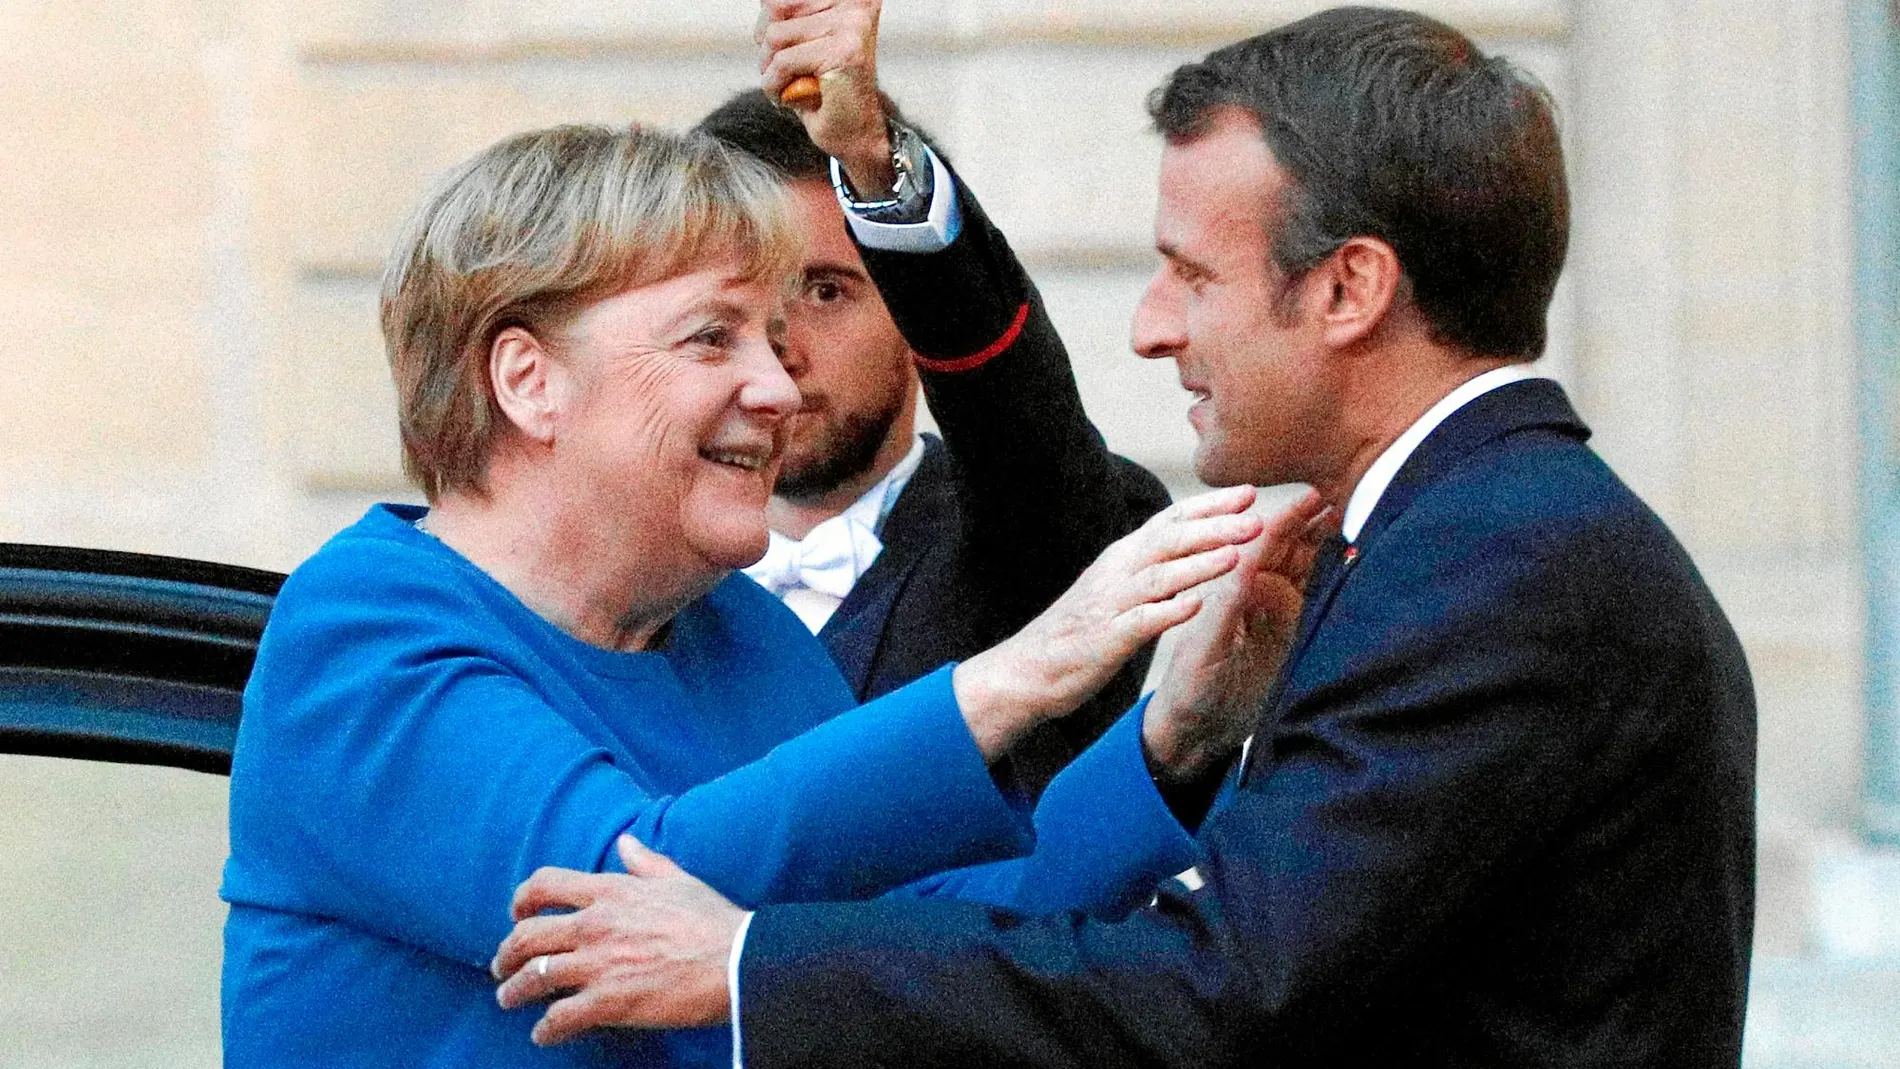 El presidente francés, Emmanuel Macron, recibió ayer en París a la canciller alemana, Angela Merkel, para unificar posturas respecto al Brexit en el decisivo Consejo europeo de esta semana